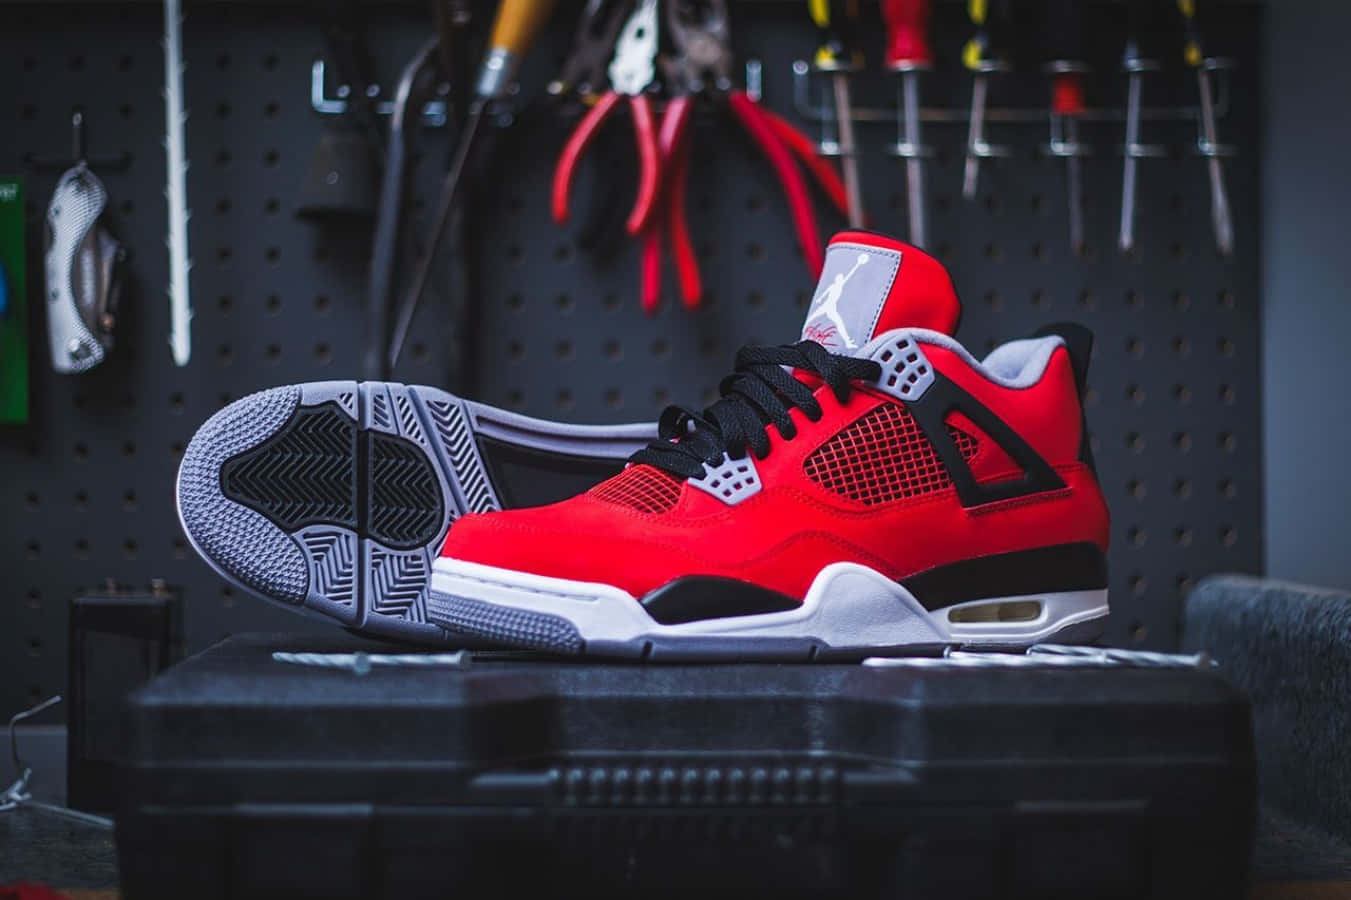 Air Jordan 4 Nike Retro Fire Red. Wallpaper